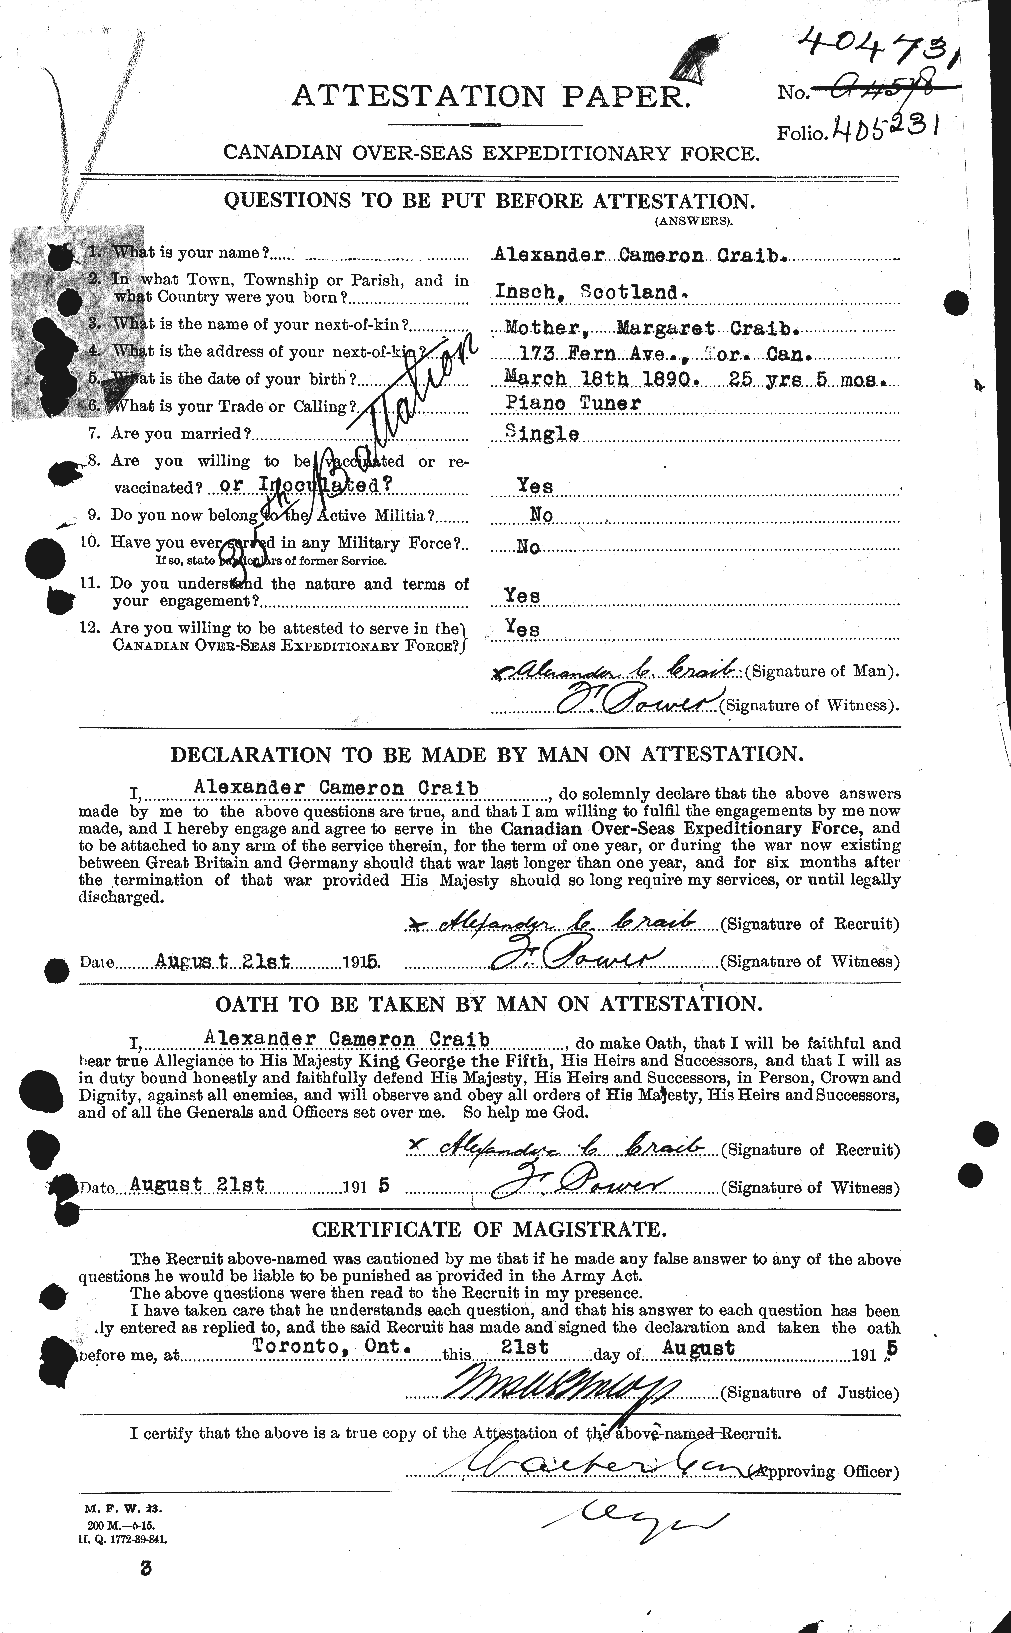 Dossiers du Personnel de la Première Guerre mondiale - CEC 062701a